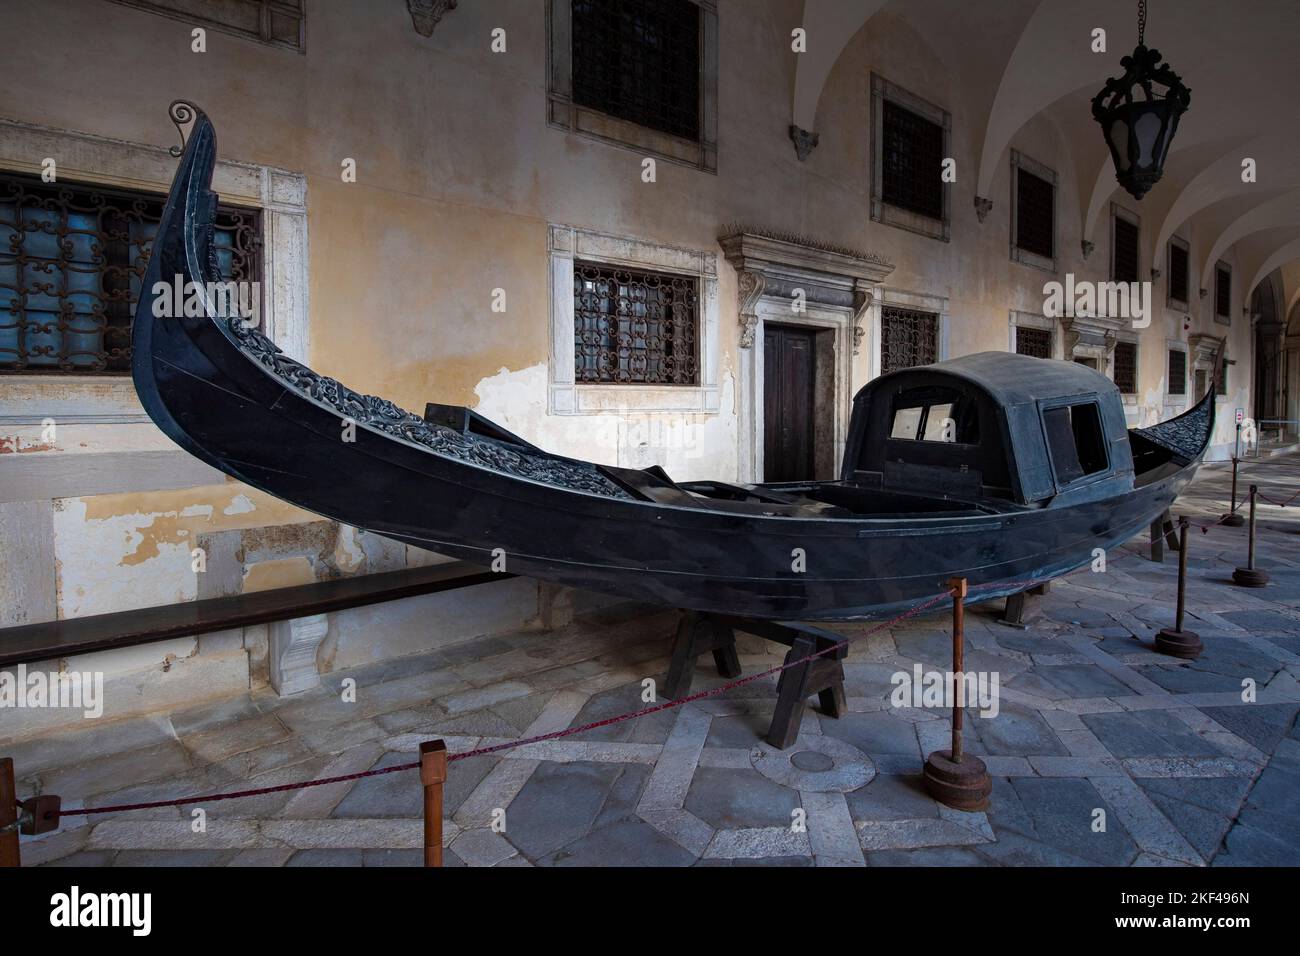 historische Gondel für Dogen, Dogenpalast im Innenhof, Venedig, Venetien, Italien Stock Photo